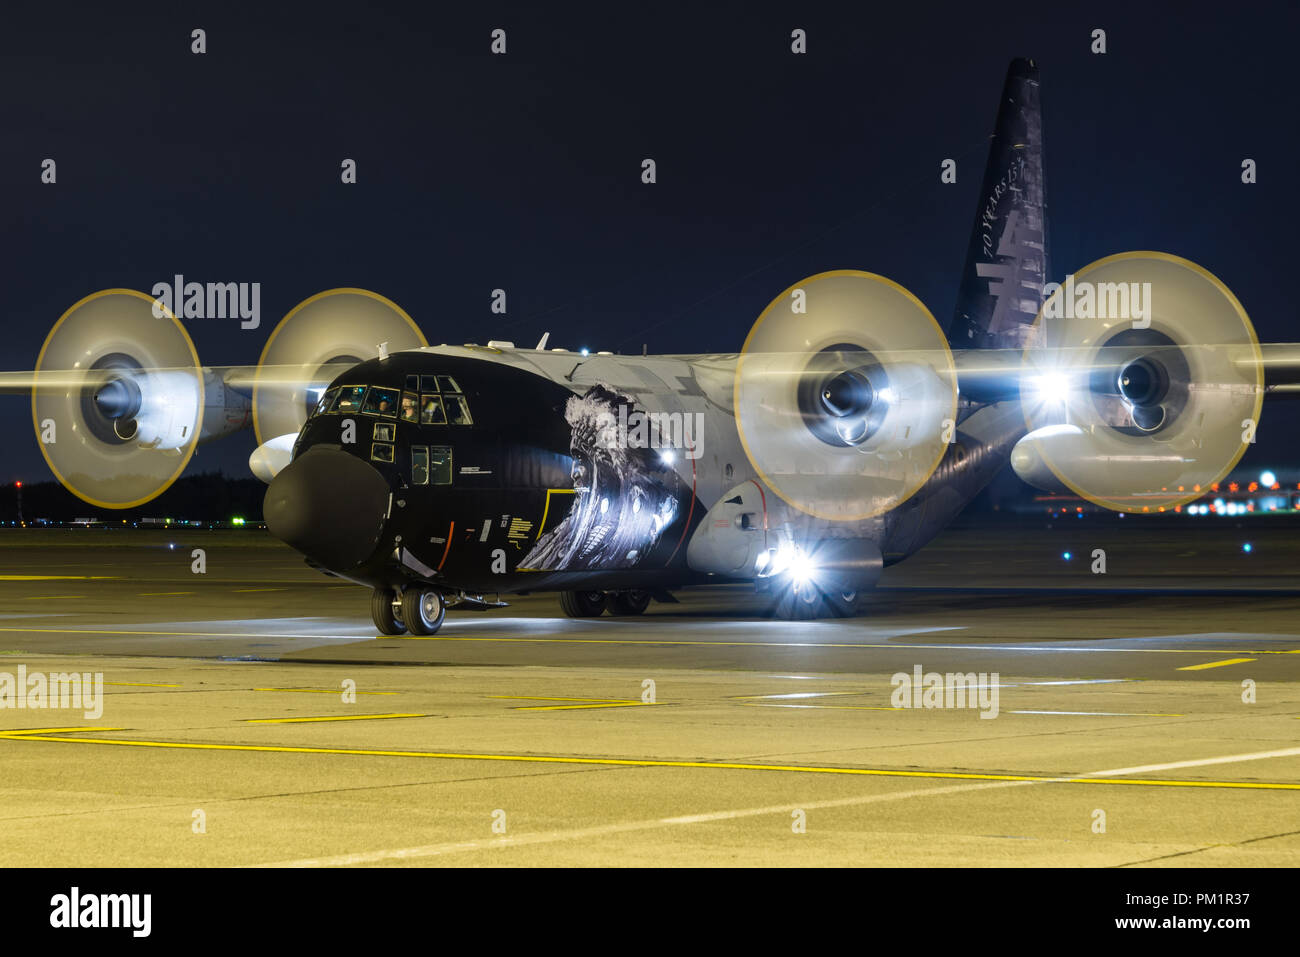 Un Lockheed C-130 Hercules des avions de transport militaires de la Force Aérienne belge à la base aérienne de Melsbroek dans la nuit. Banque D'Images